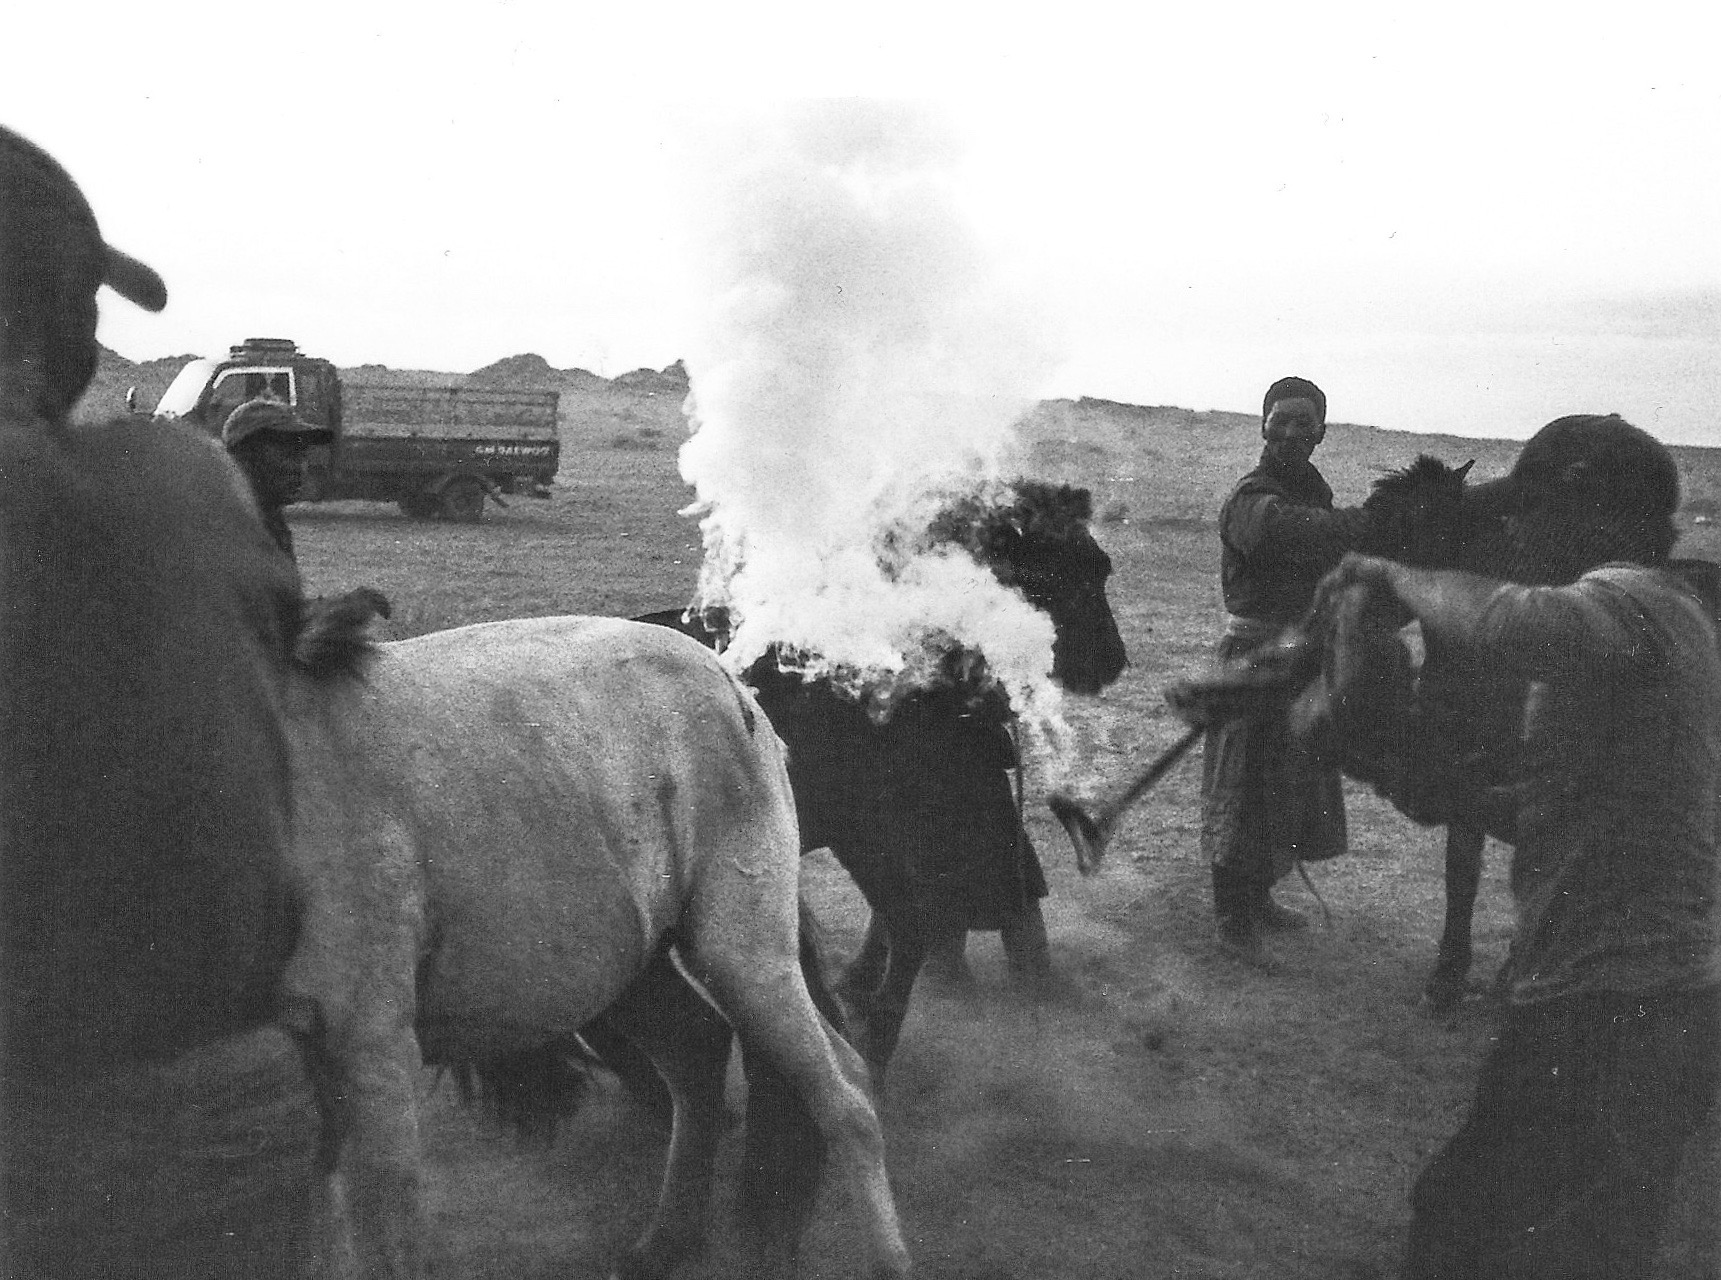 Horsebranding in the Gobi Desert